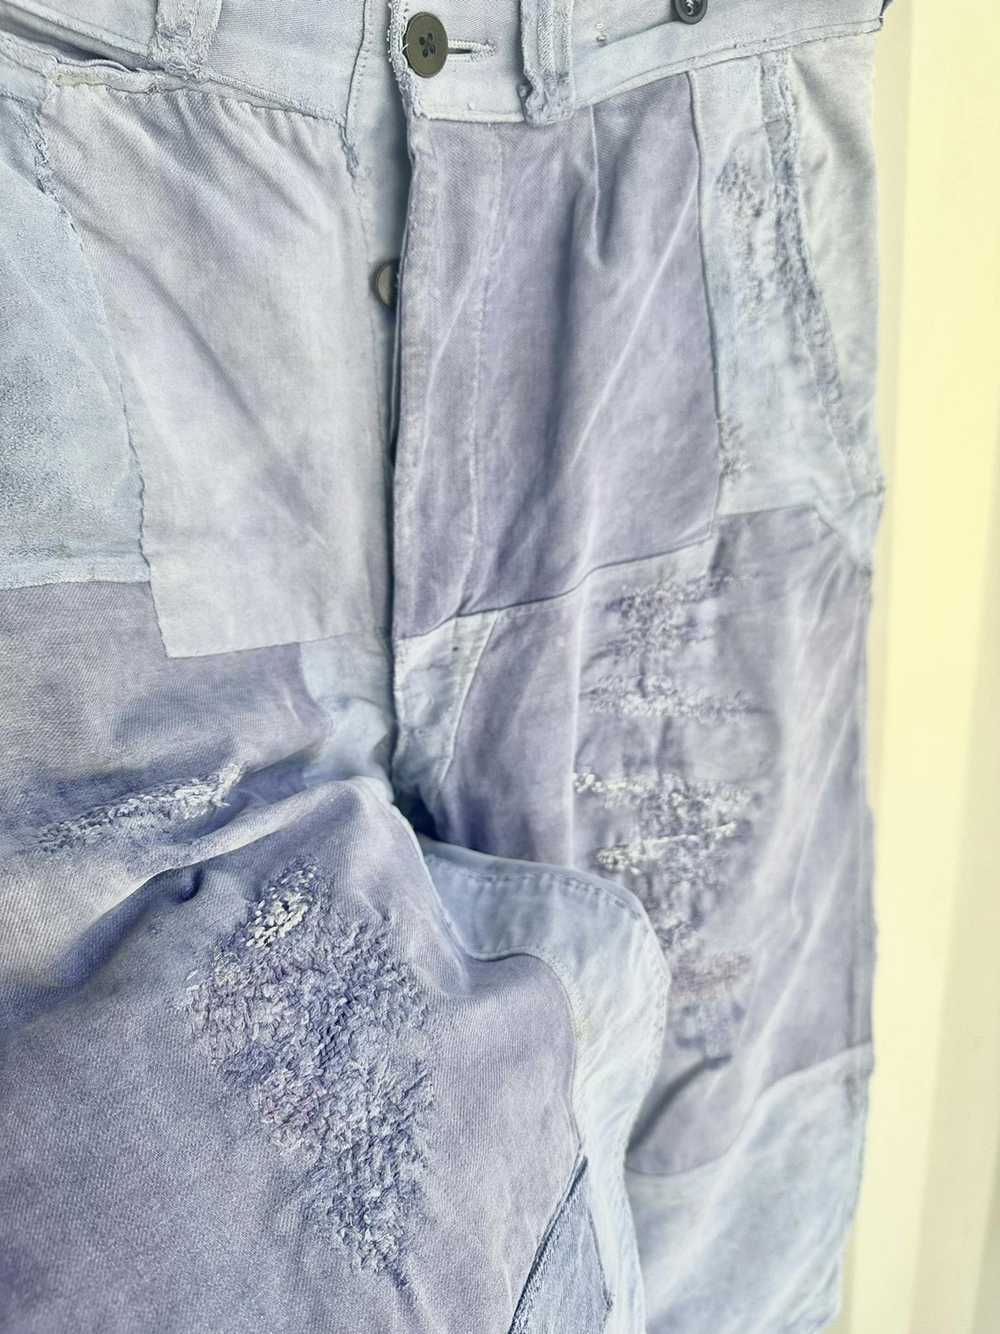 Vintage French Workwear Moleskin Chore Pants - image 5